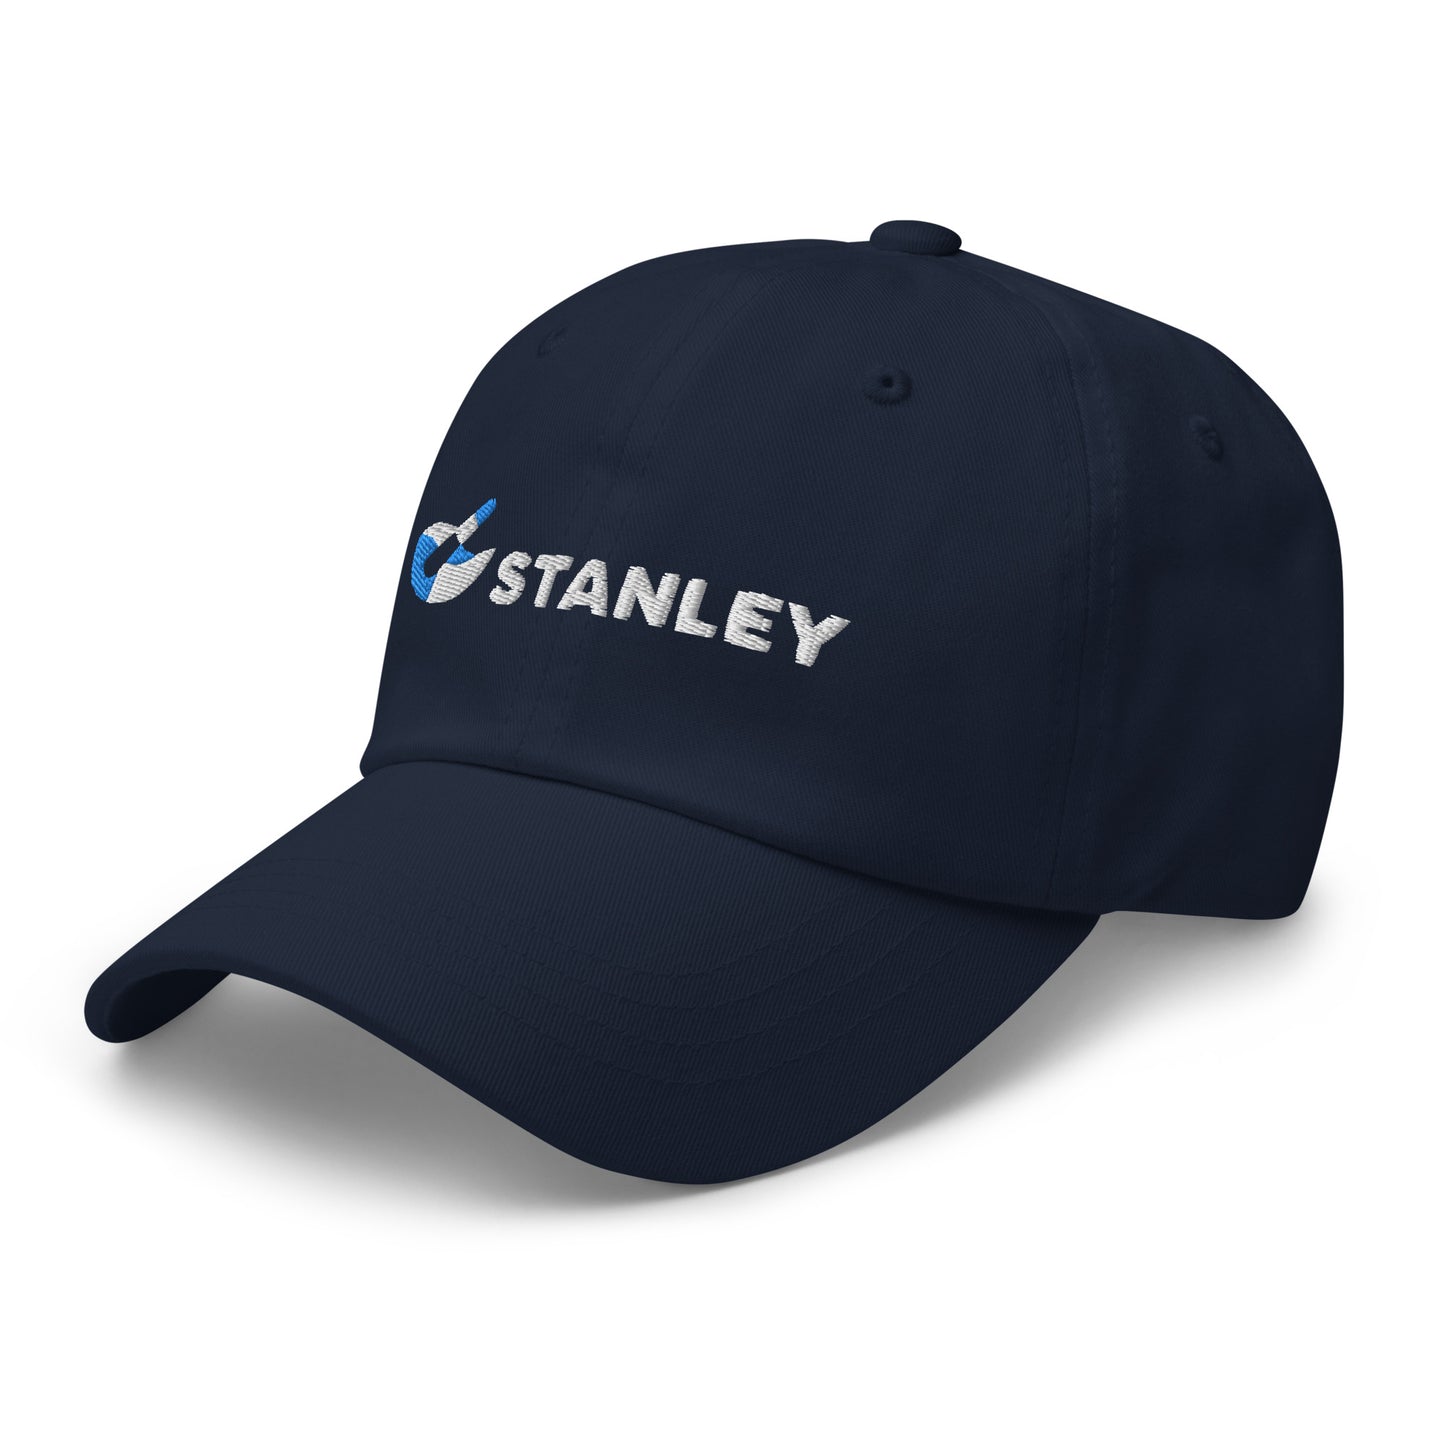 Dad hat - Stanley